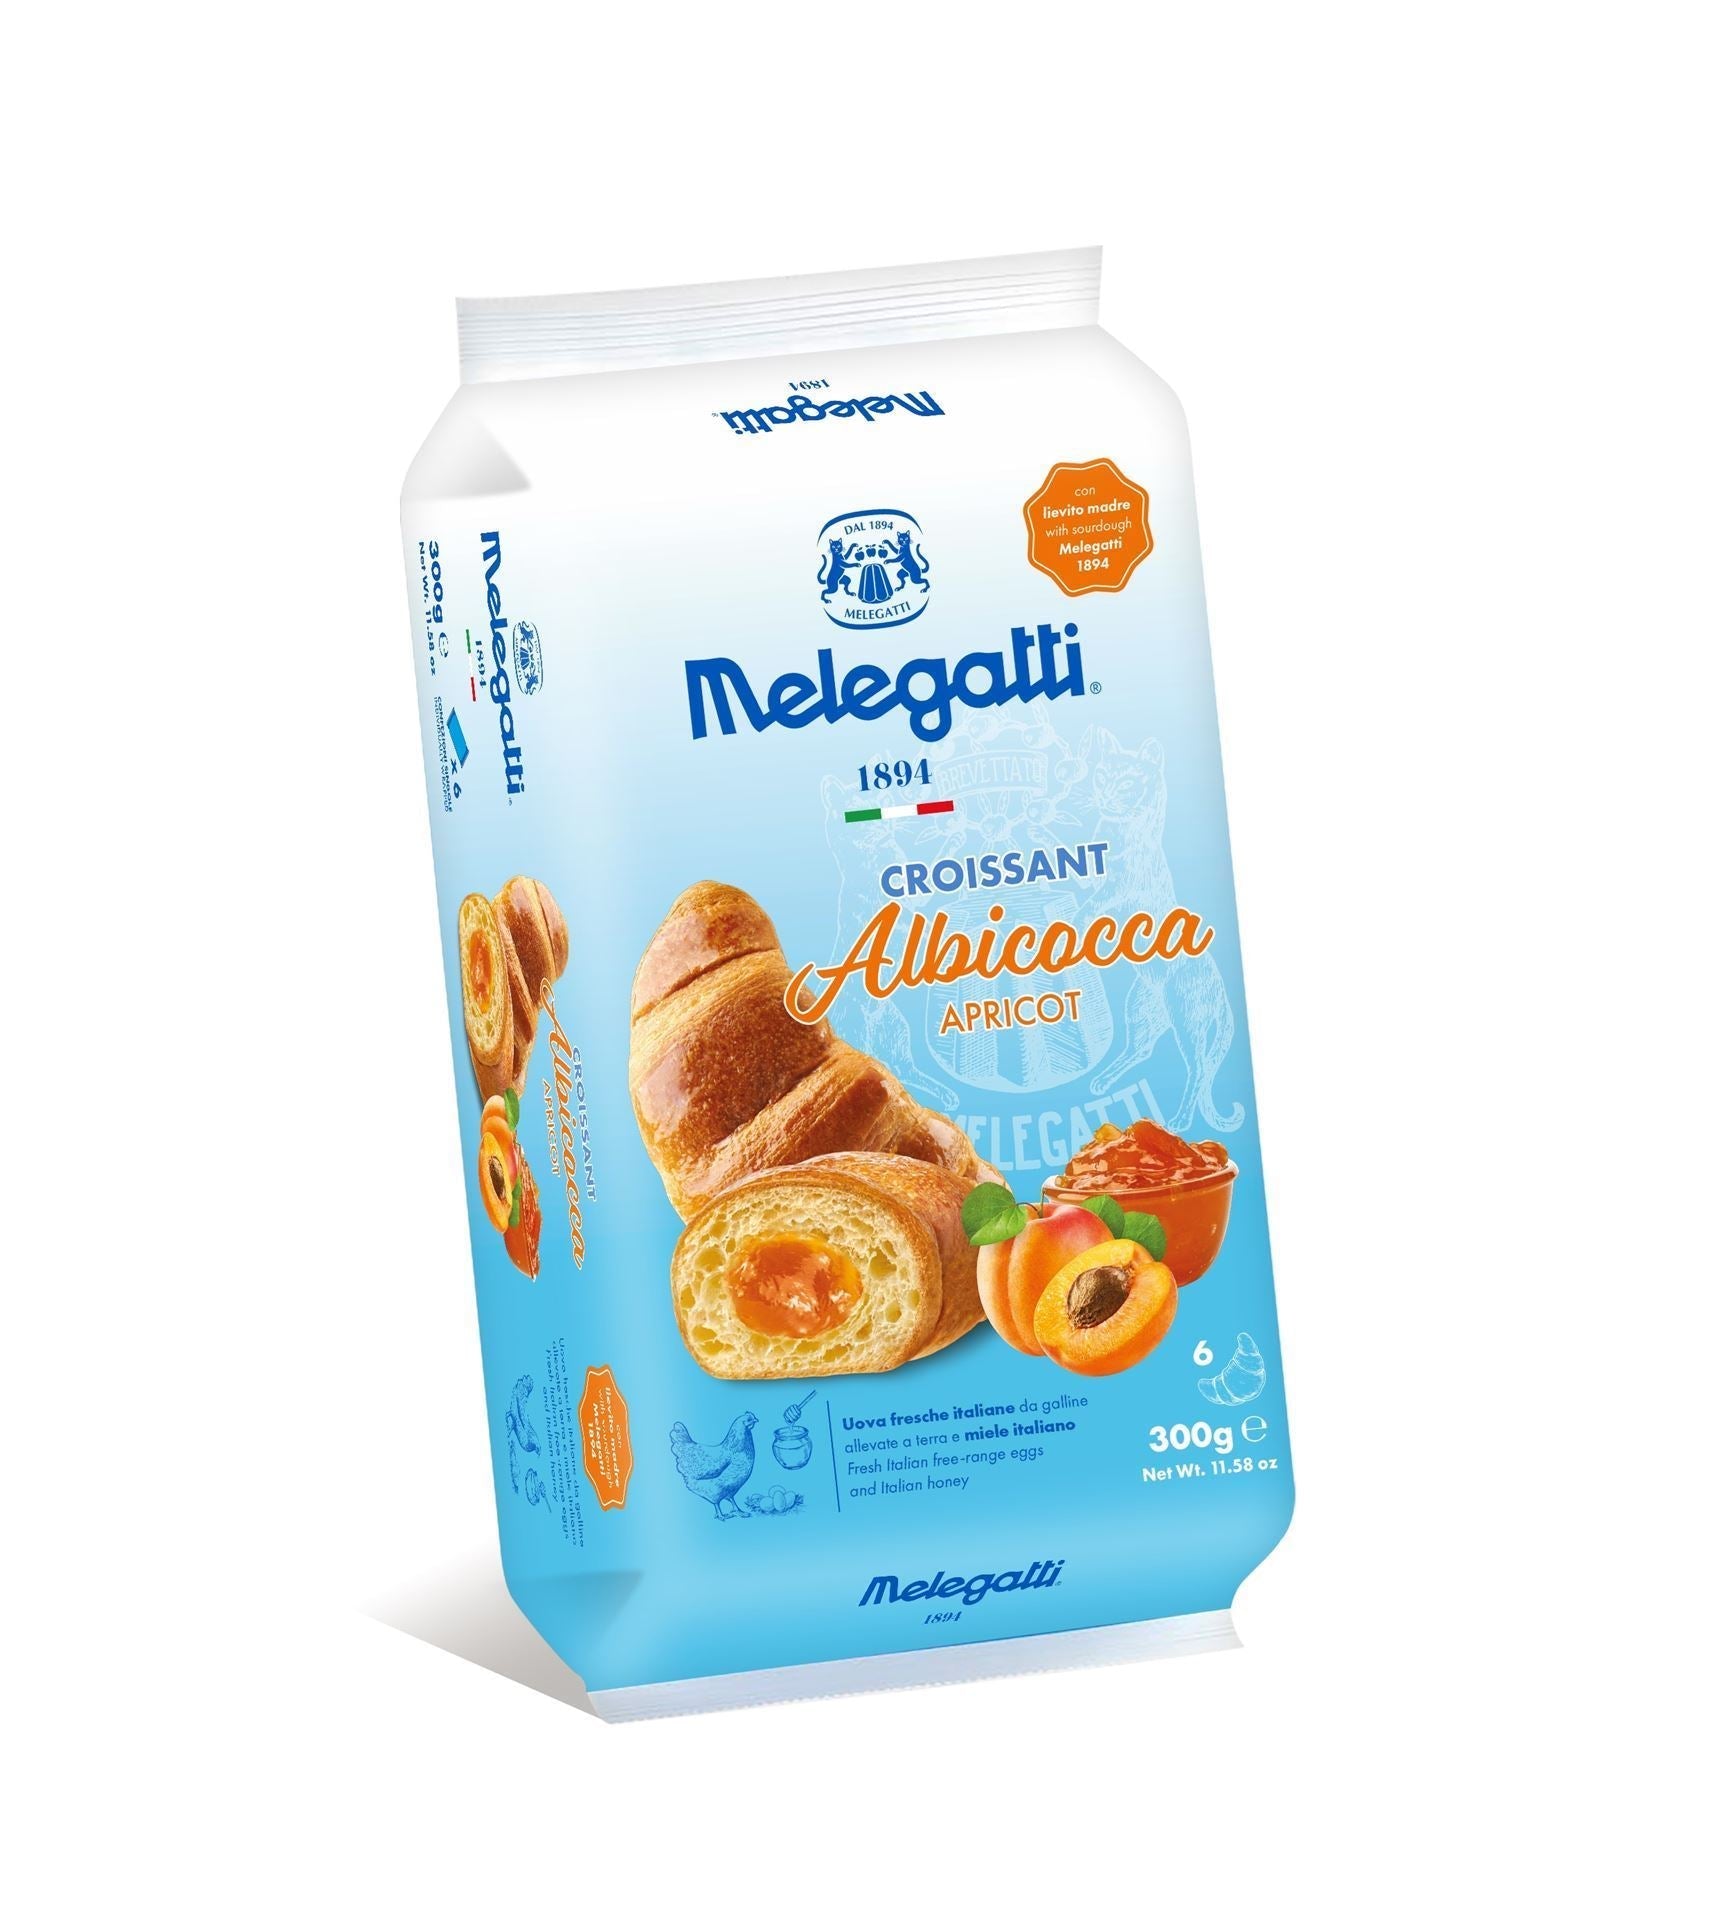 Melegatti Croissant relleno en Albicocca 6 x50gr